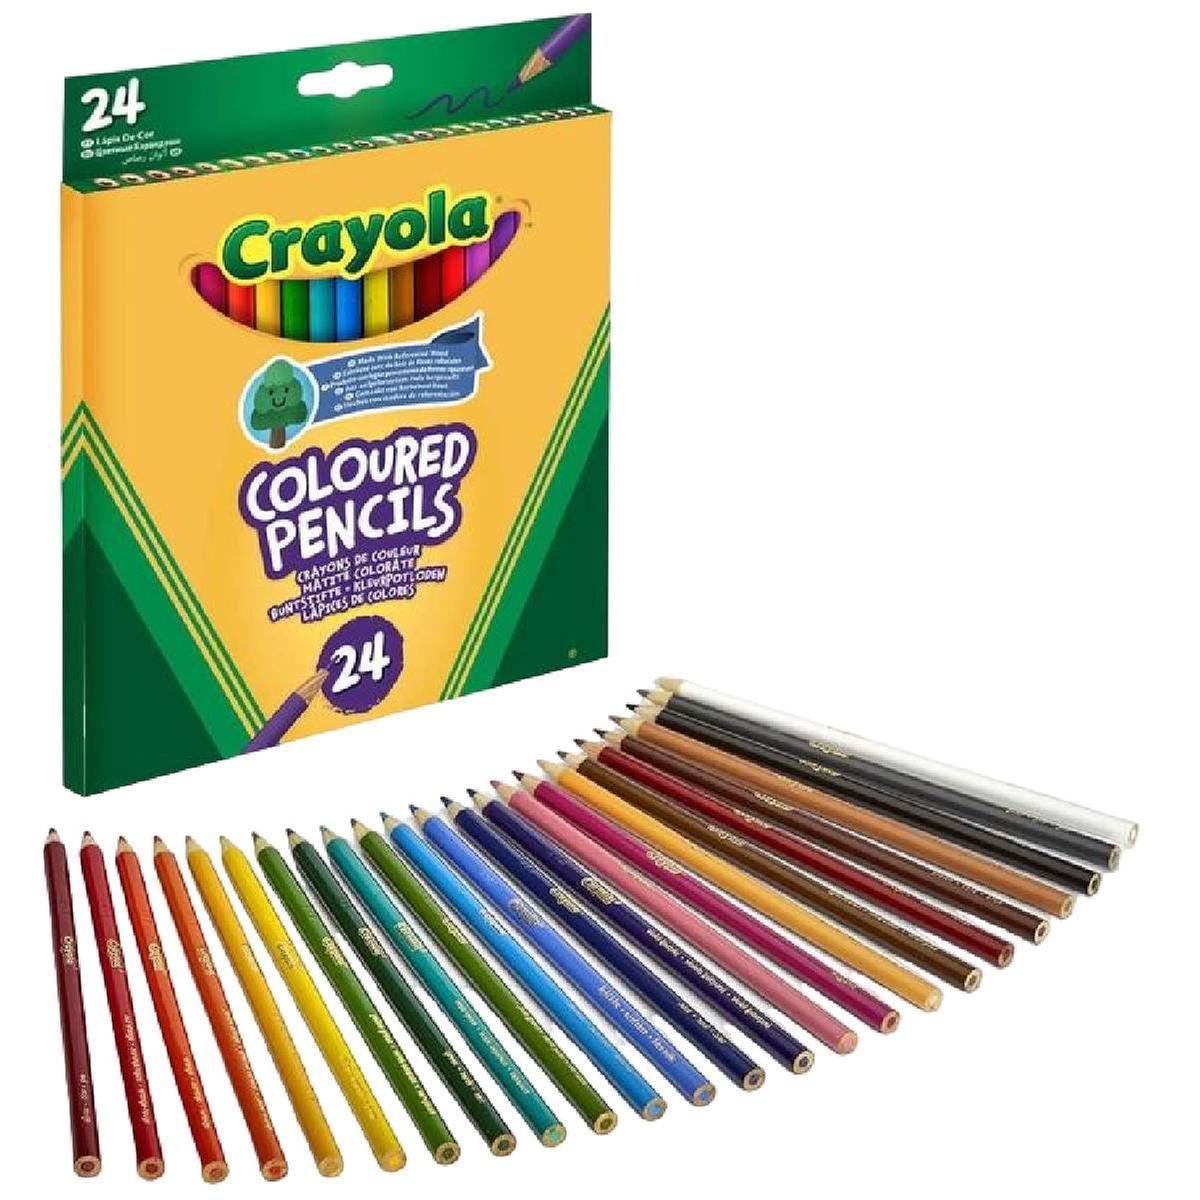 Laboratorio de Rotuladores Multicolor (Anuncio de Crayola) 